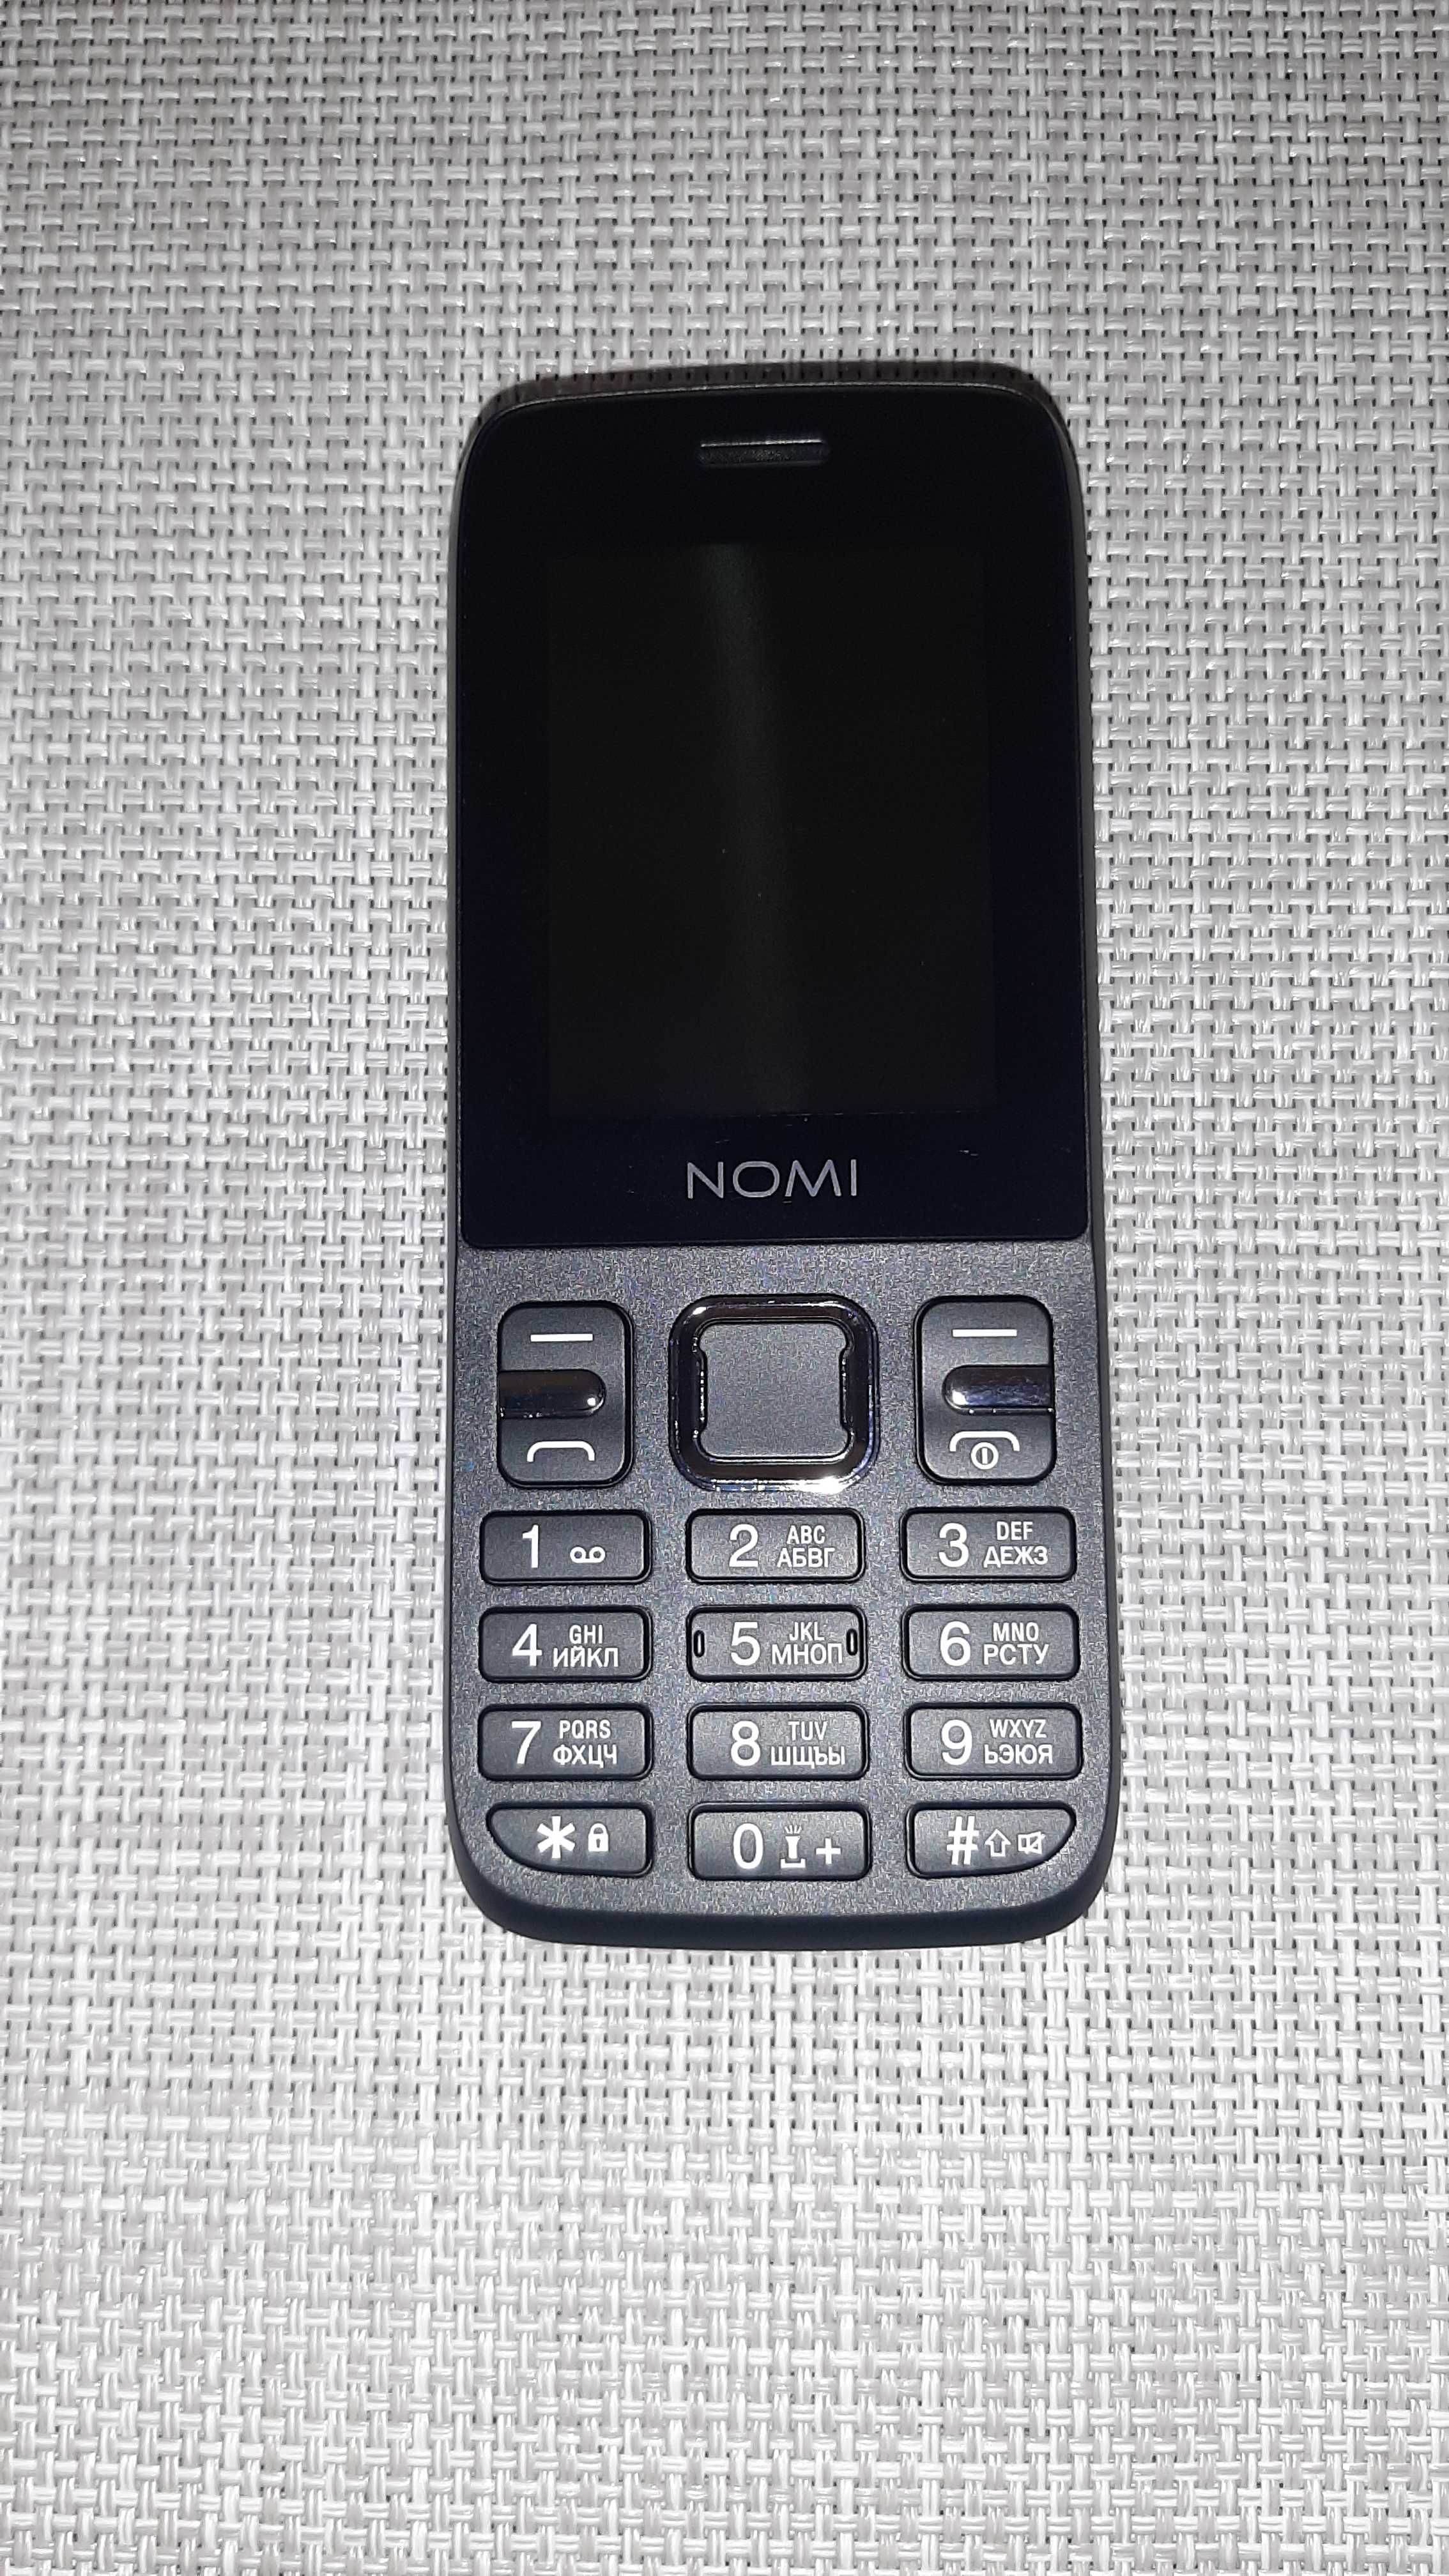 Мобильный телефон Nomi i2430 Black (Черный)  мощная батарея 2500mAh